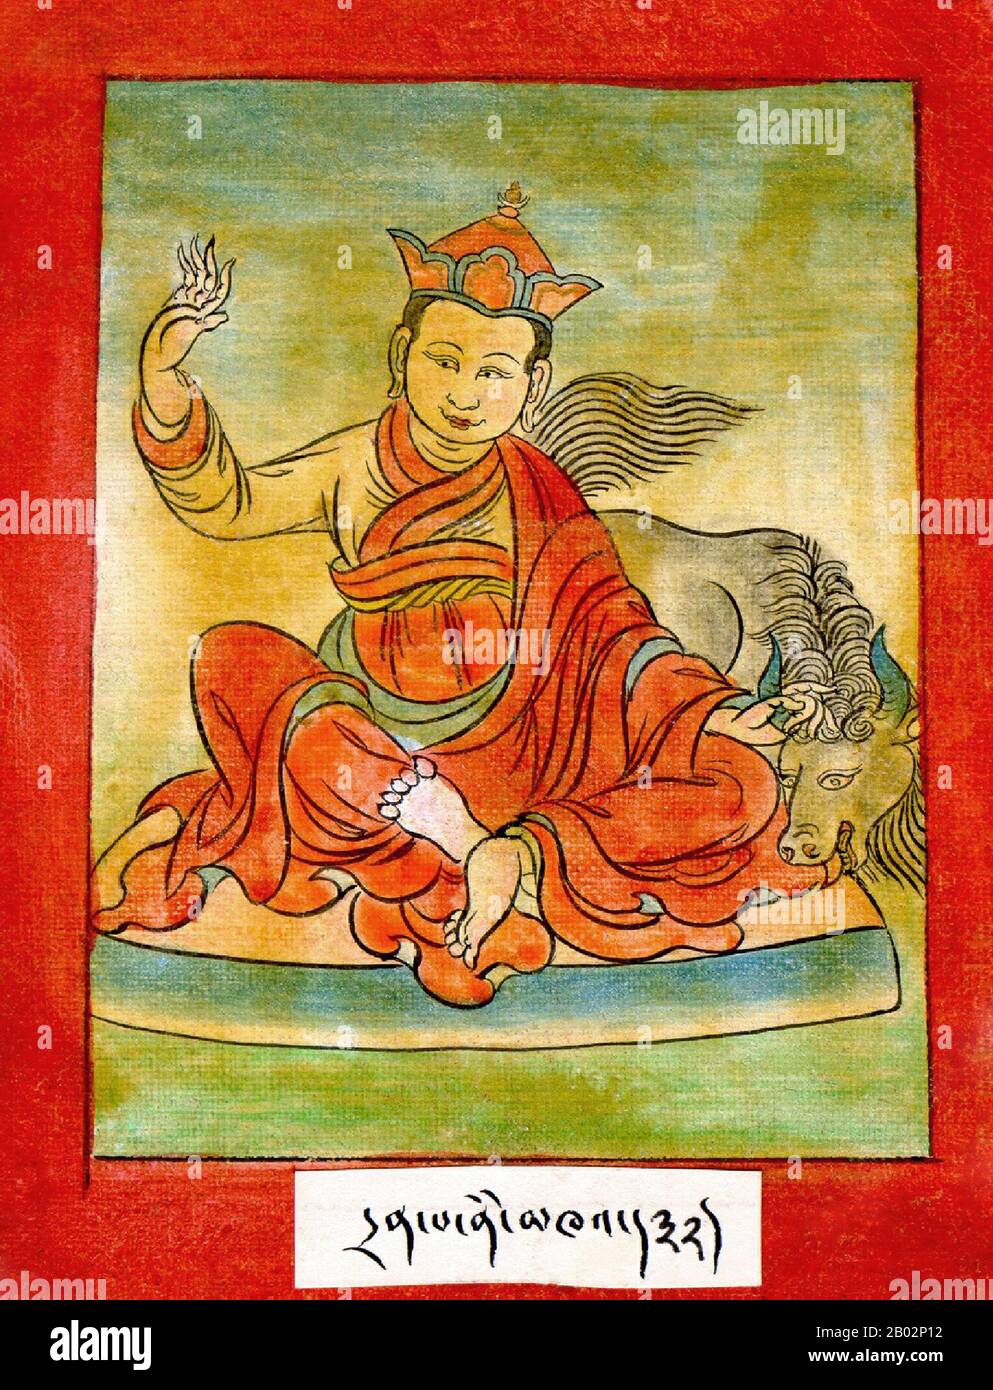 Drenpa Namkha wird sowohl von der buddhistischen als auch von der Bön-Tradition als wichtige religiöse Persönlichkeit beansprucht. Die Quellen, die über das Leben von Drenpa Namkha sprechen, sind sehr unterschiedlich, auch innerhalb einer einzigen Tradition: Innerhalb der Bön-Quellen wird angenommen, dass es einen Meister mit dem Namen Drenpa Namkha in Zhang Zhung und einen in Tibet gibt, obwohl seine Existenz nie in Frage gestellt wird. Sicher ist wenig bekannt. Nach buddhistischen Quellen war Drenpa Namkha zunächst ein Bönmeister, der zum Buddhismus konvertierte. Später wurde er einer der fünfundzwanzig Schüler Padmasambhavas, und er soll die yogische Macht des Seins gewonnen haben Stockfoto